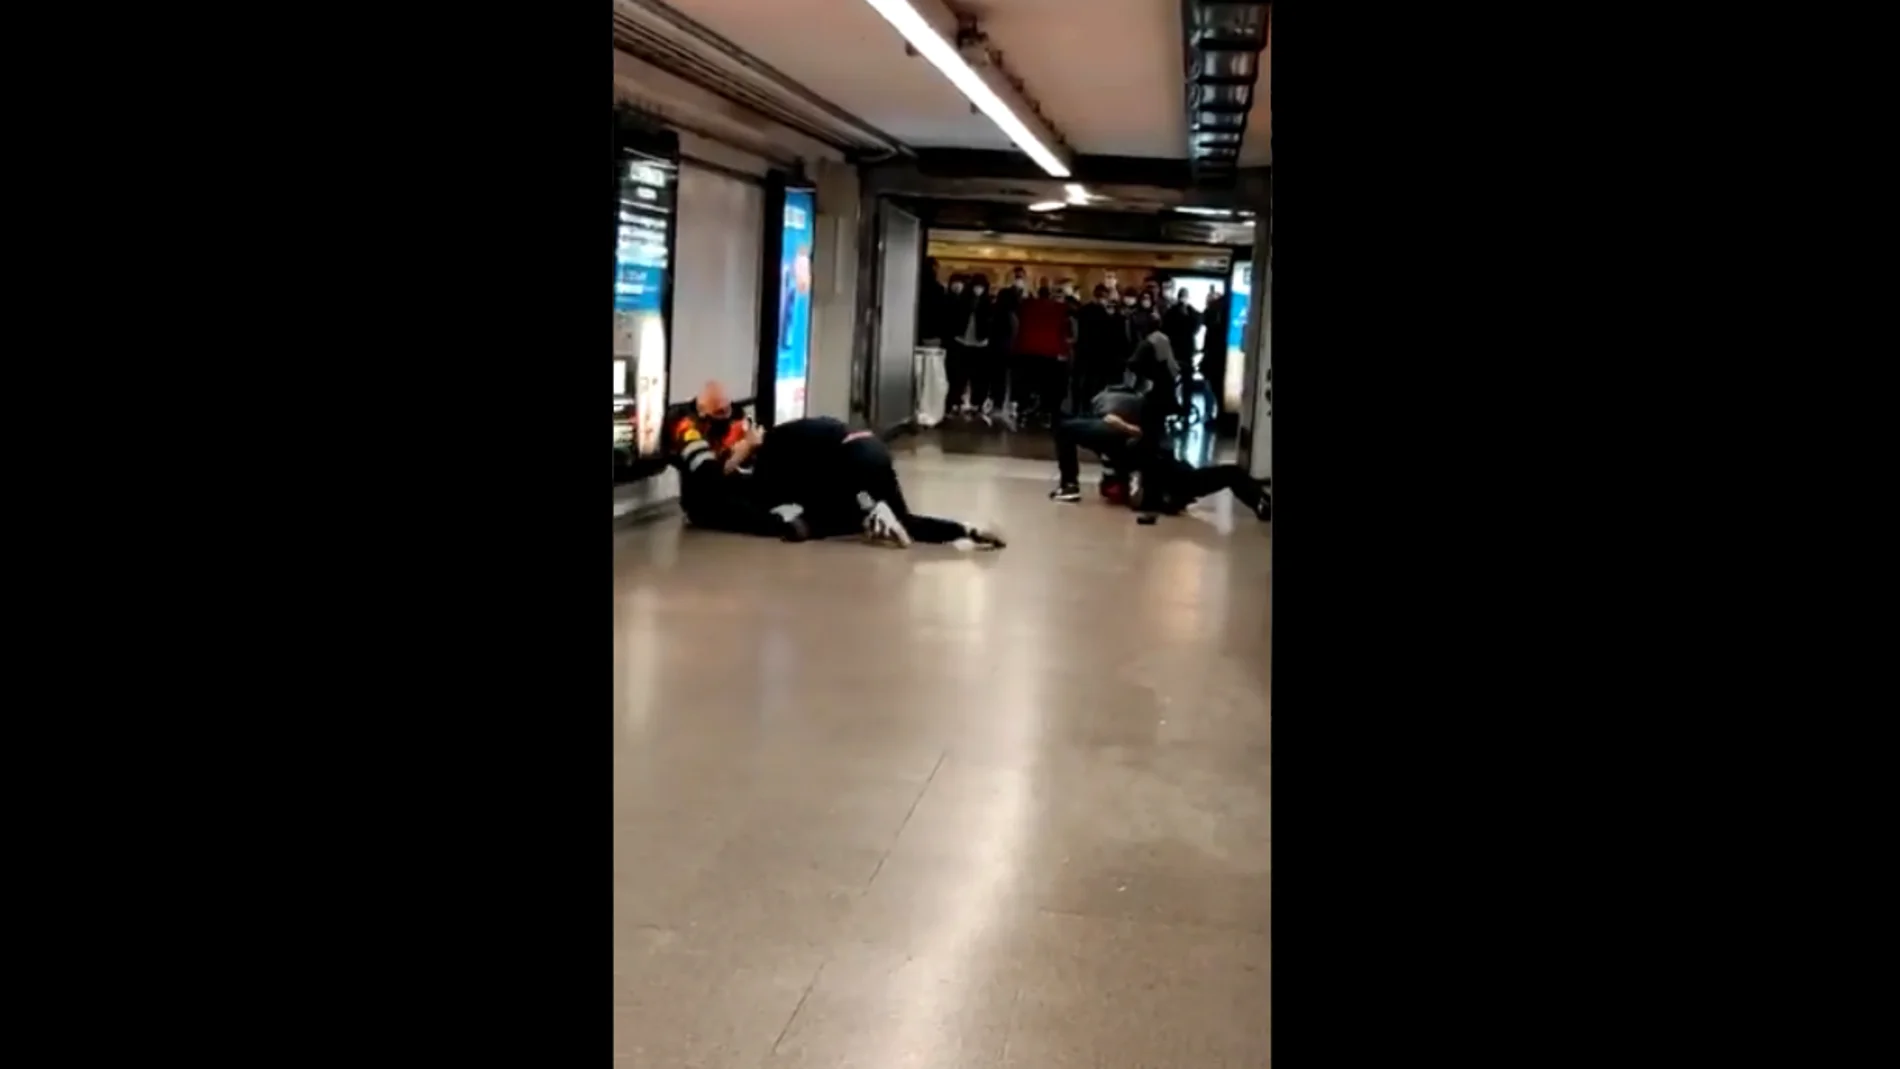 Graban la agresión a dos vigilantes del Metro de Barcelona